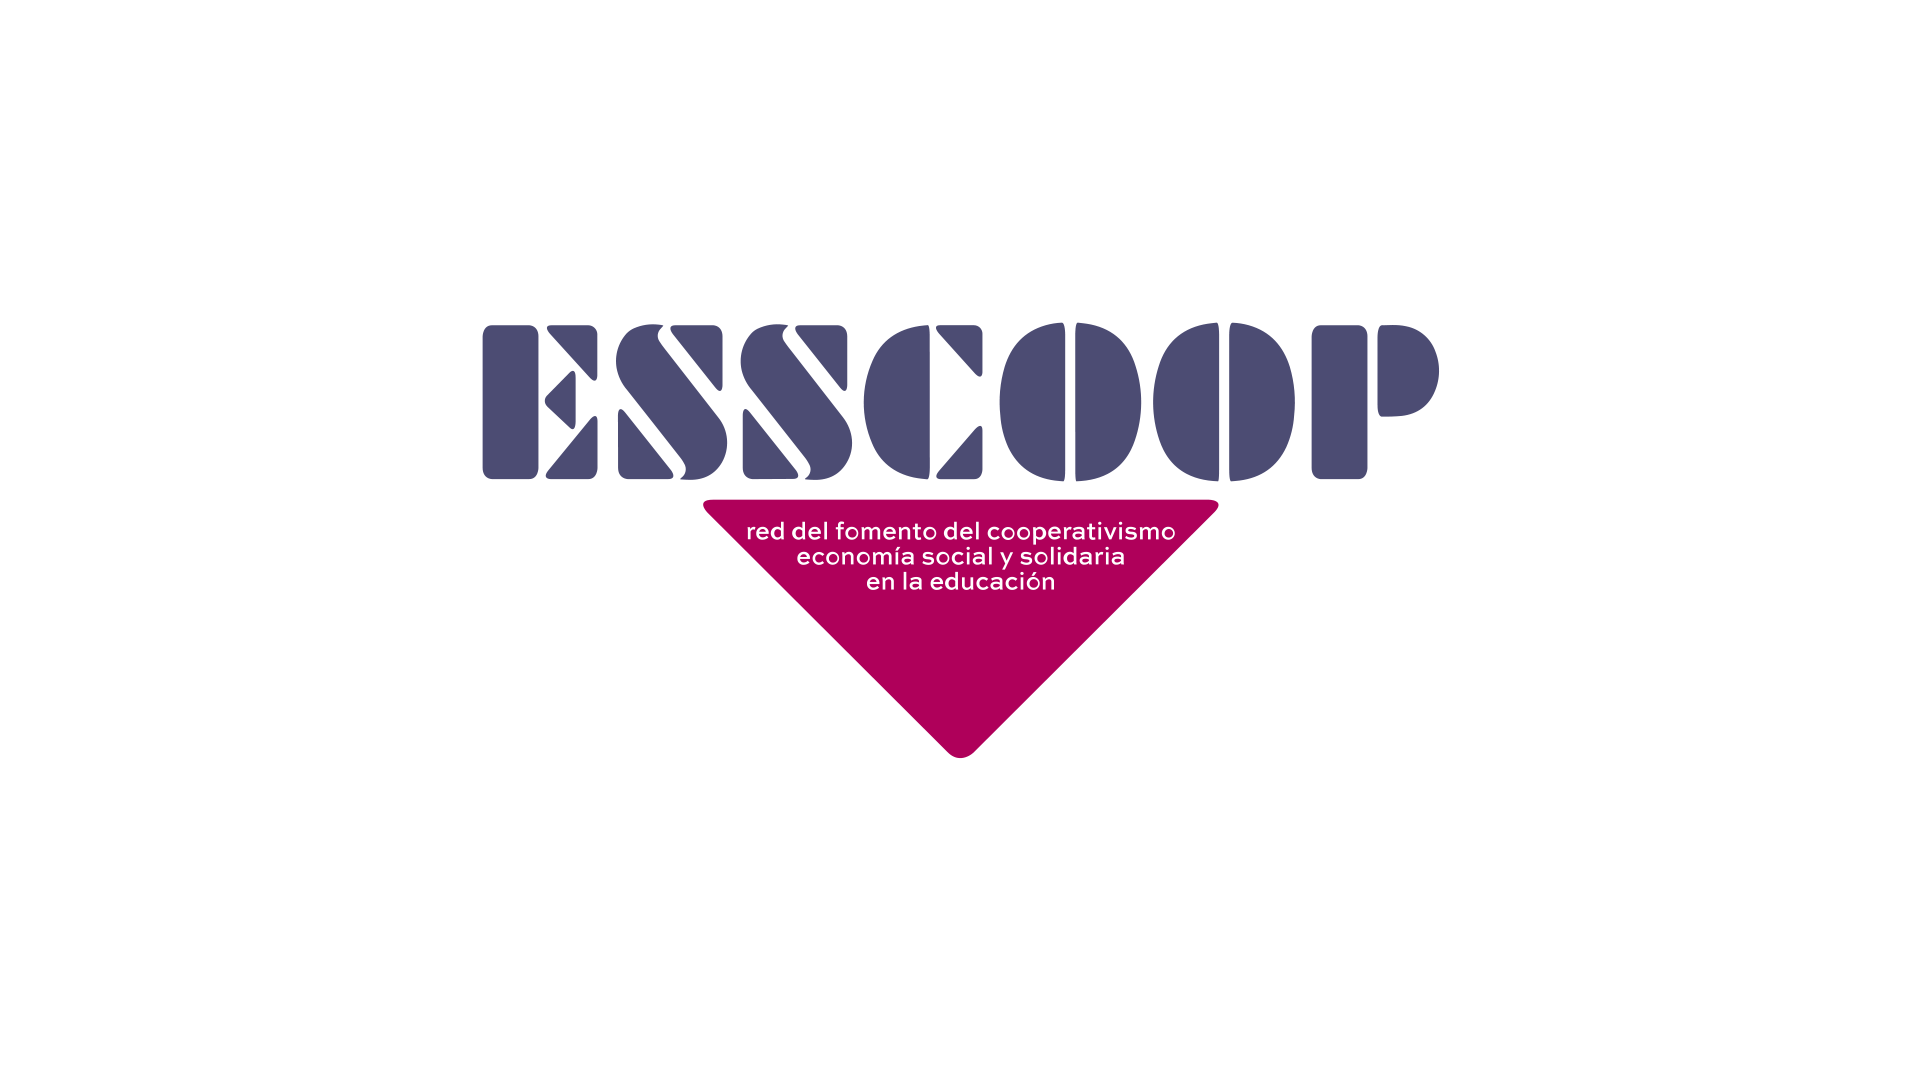 ESSCOOP, red de fomento del cooperativismo, economía social y solidaria en la educación